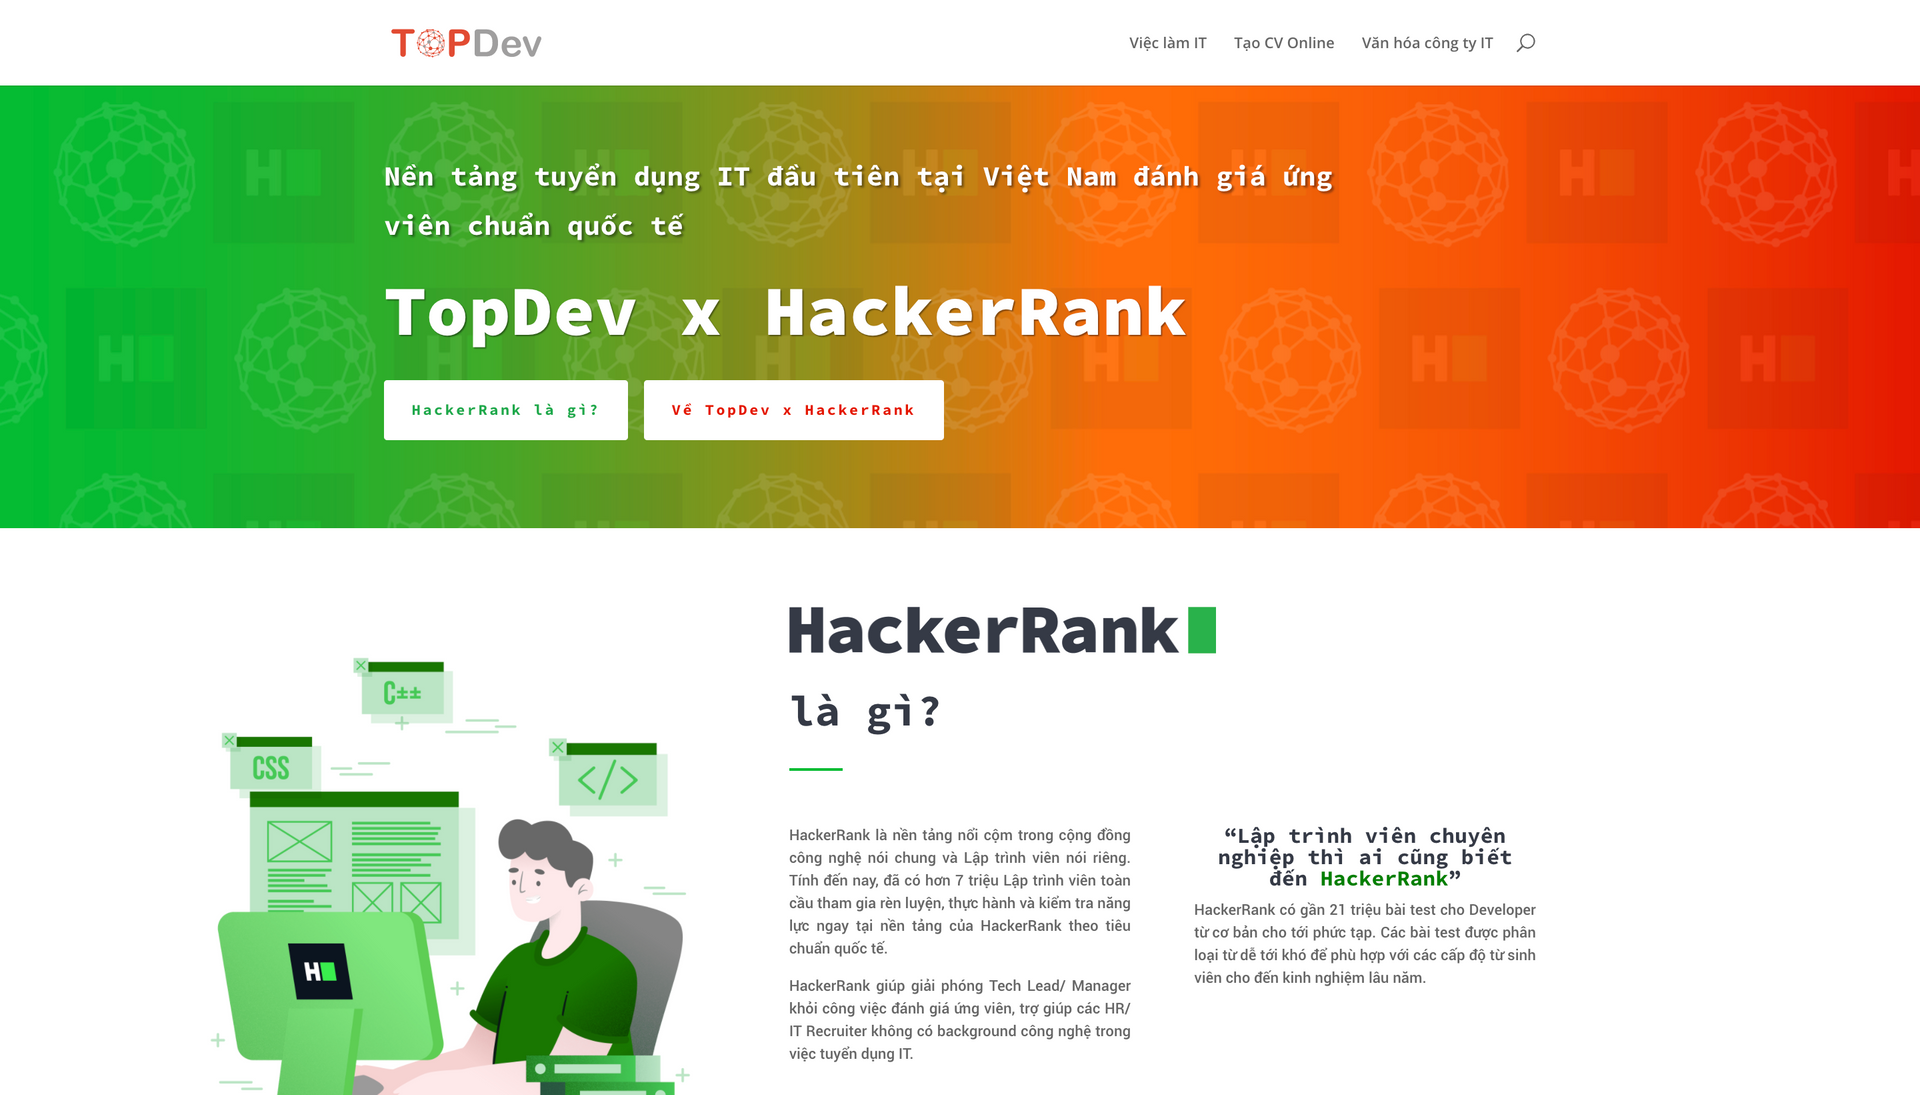 TopDev & HackerRank, bộ đôi hợp nhất nhân sức mạnh kênh tuyển dụng IT - Ảnh 4.